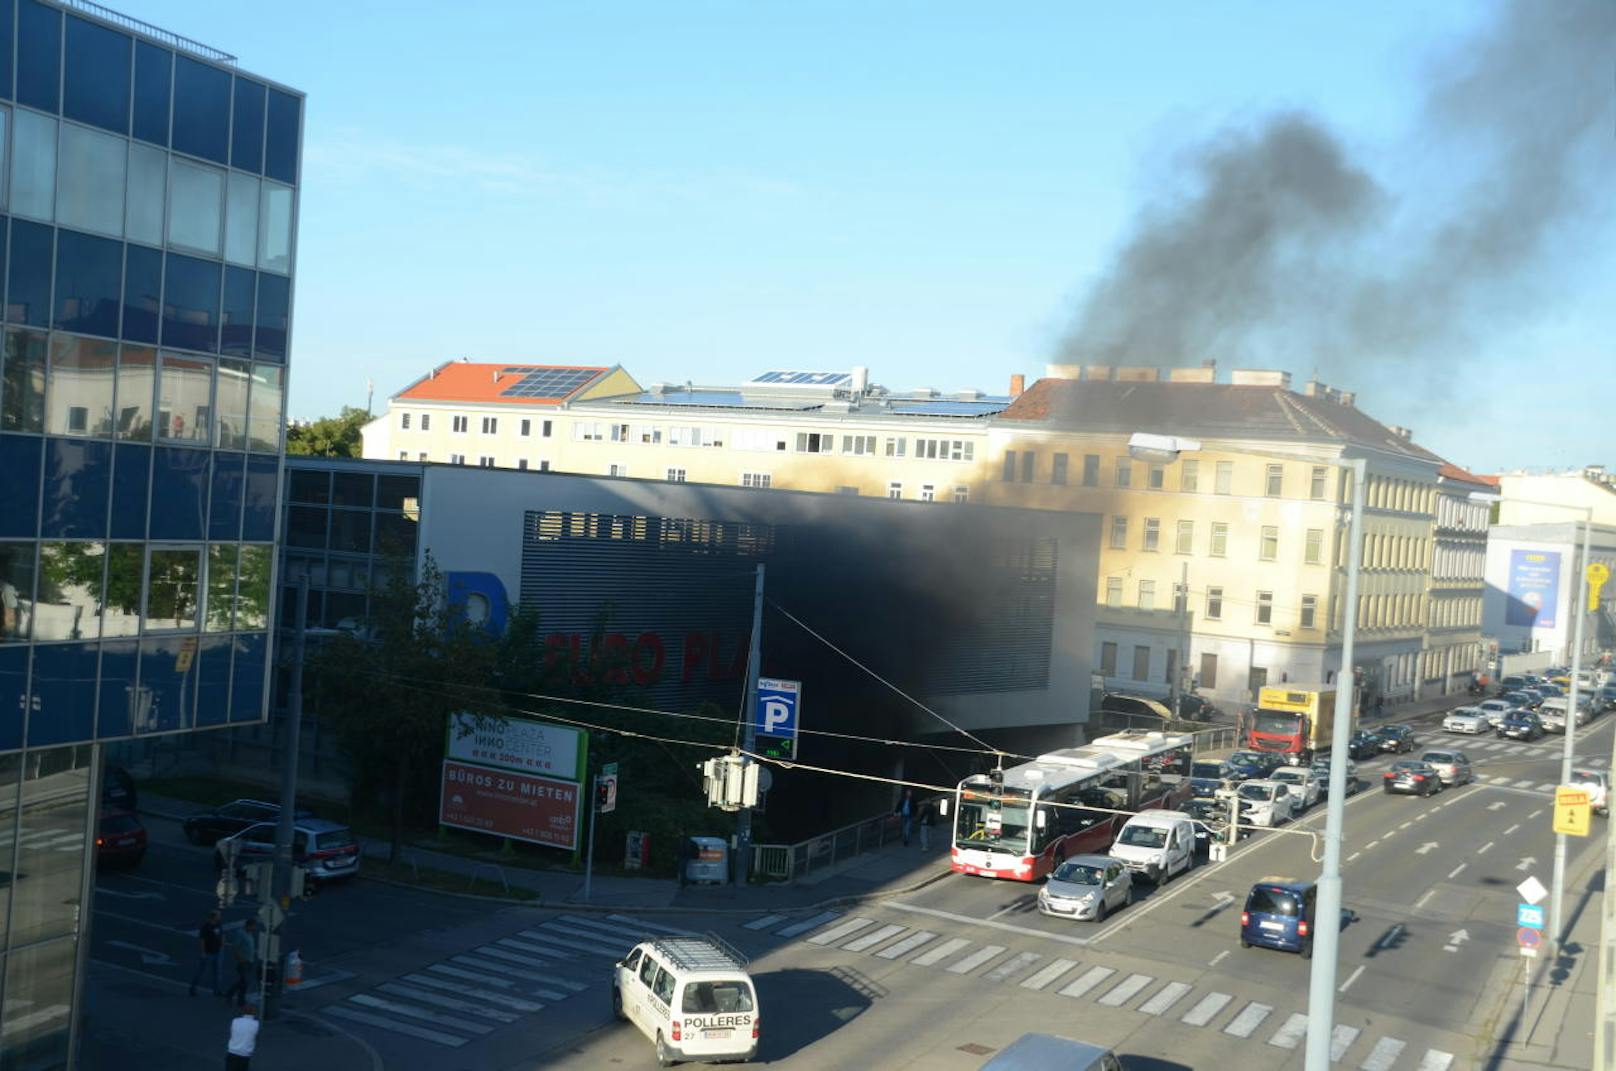 Schwarzer Rauch qualmte am Mittwochmorgen aus der Europlaza-Parkgarage in Wien-Meidling. Die Feuerwehr war mit mehreren Einsatzfahrzeugen vor Ort.